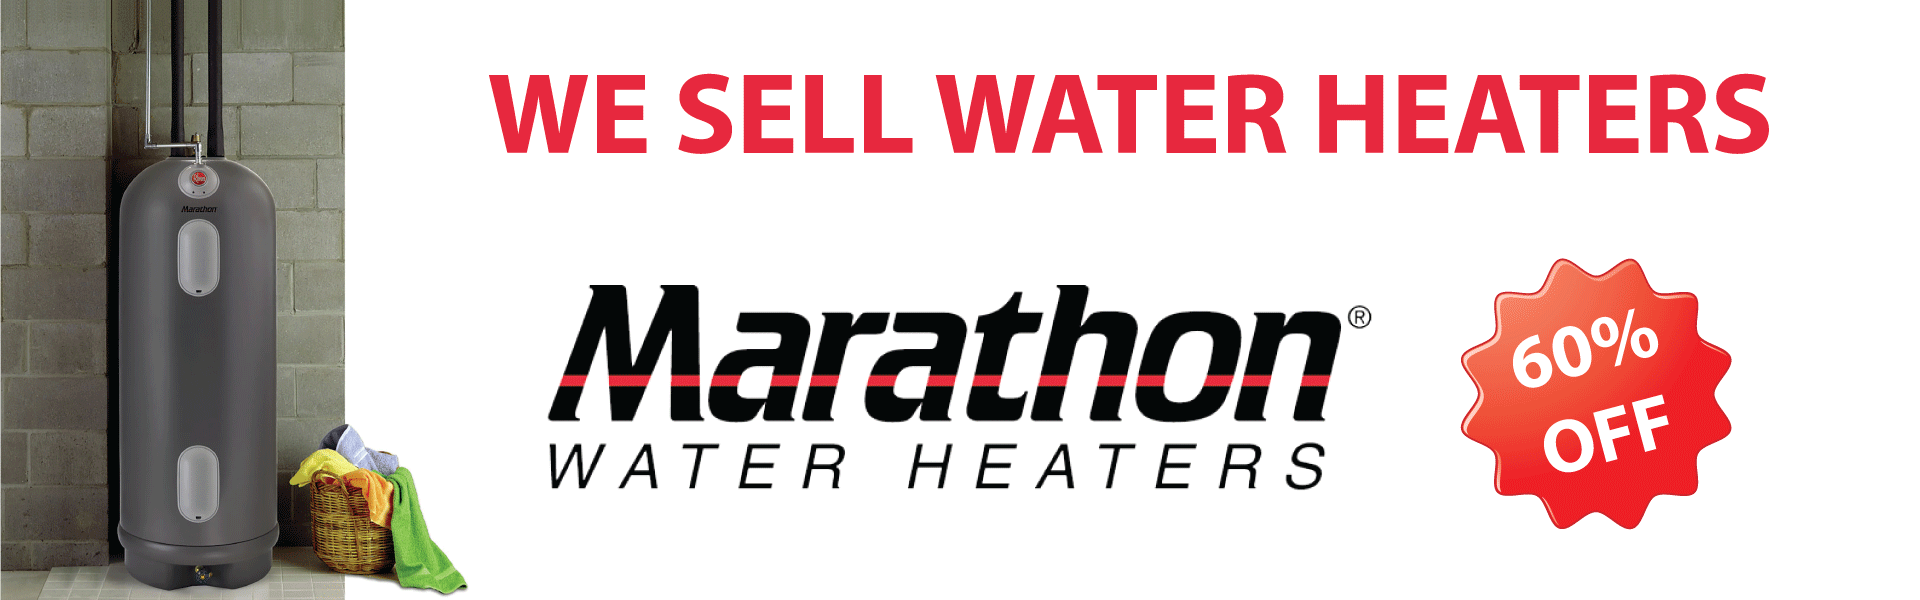 We sale water heaters